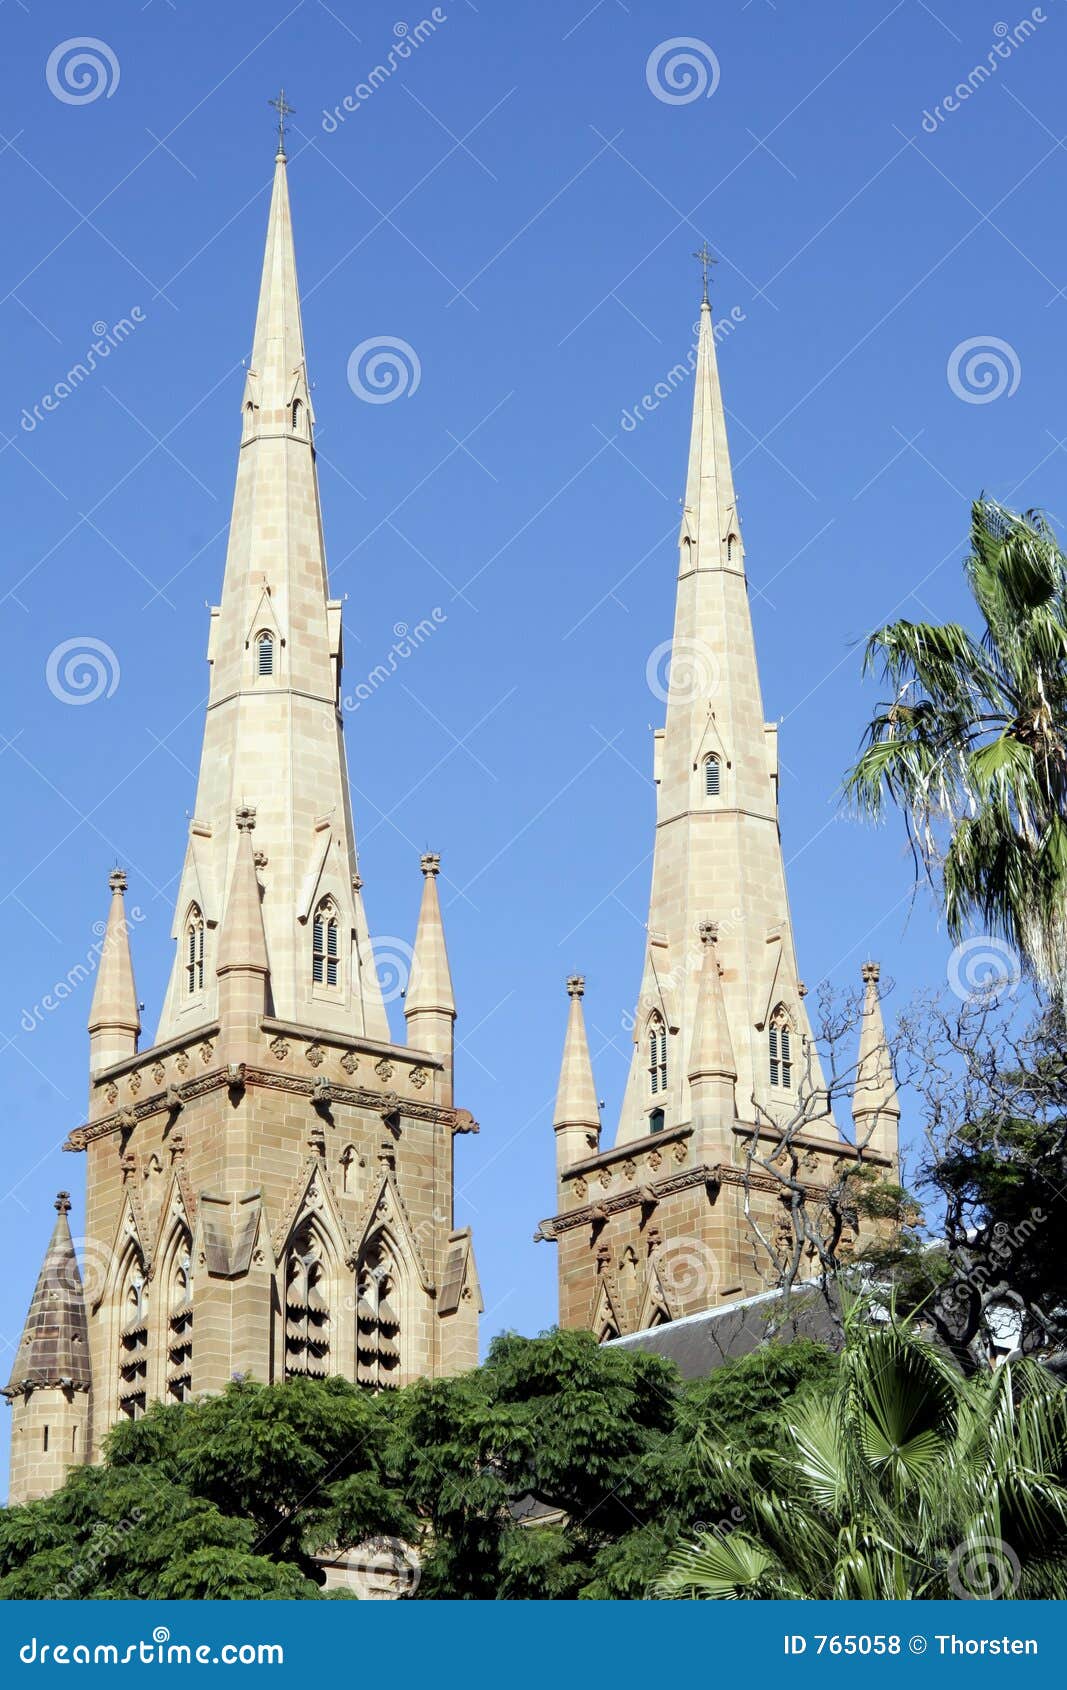 圣玛丽大教堂(St Mary's Cathedral)是悉尼大主教的所在地|Cathedral|天主教堂|大教堂_新浪新闻